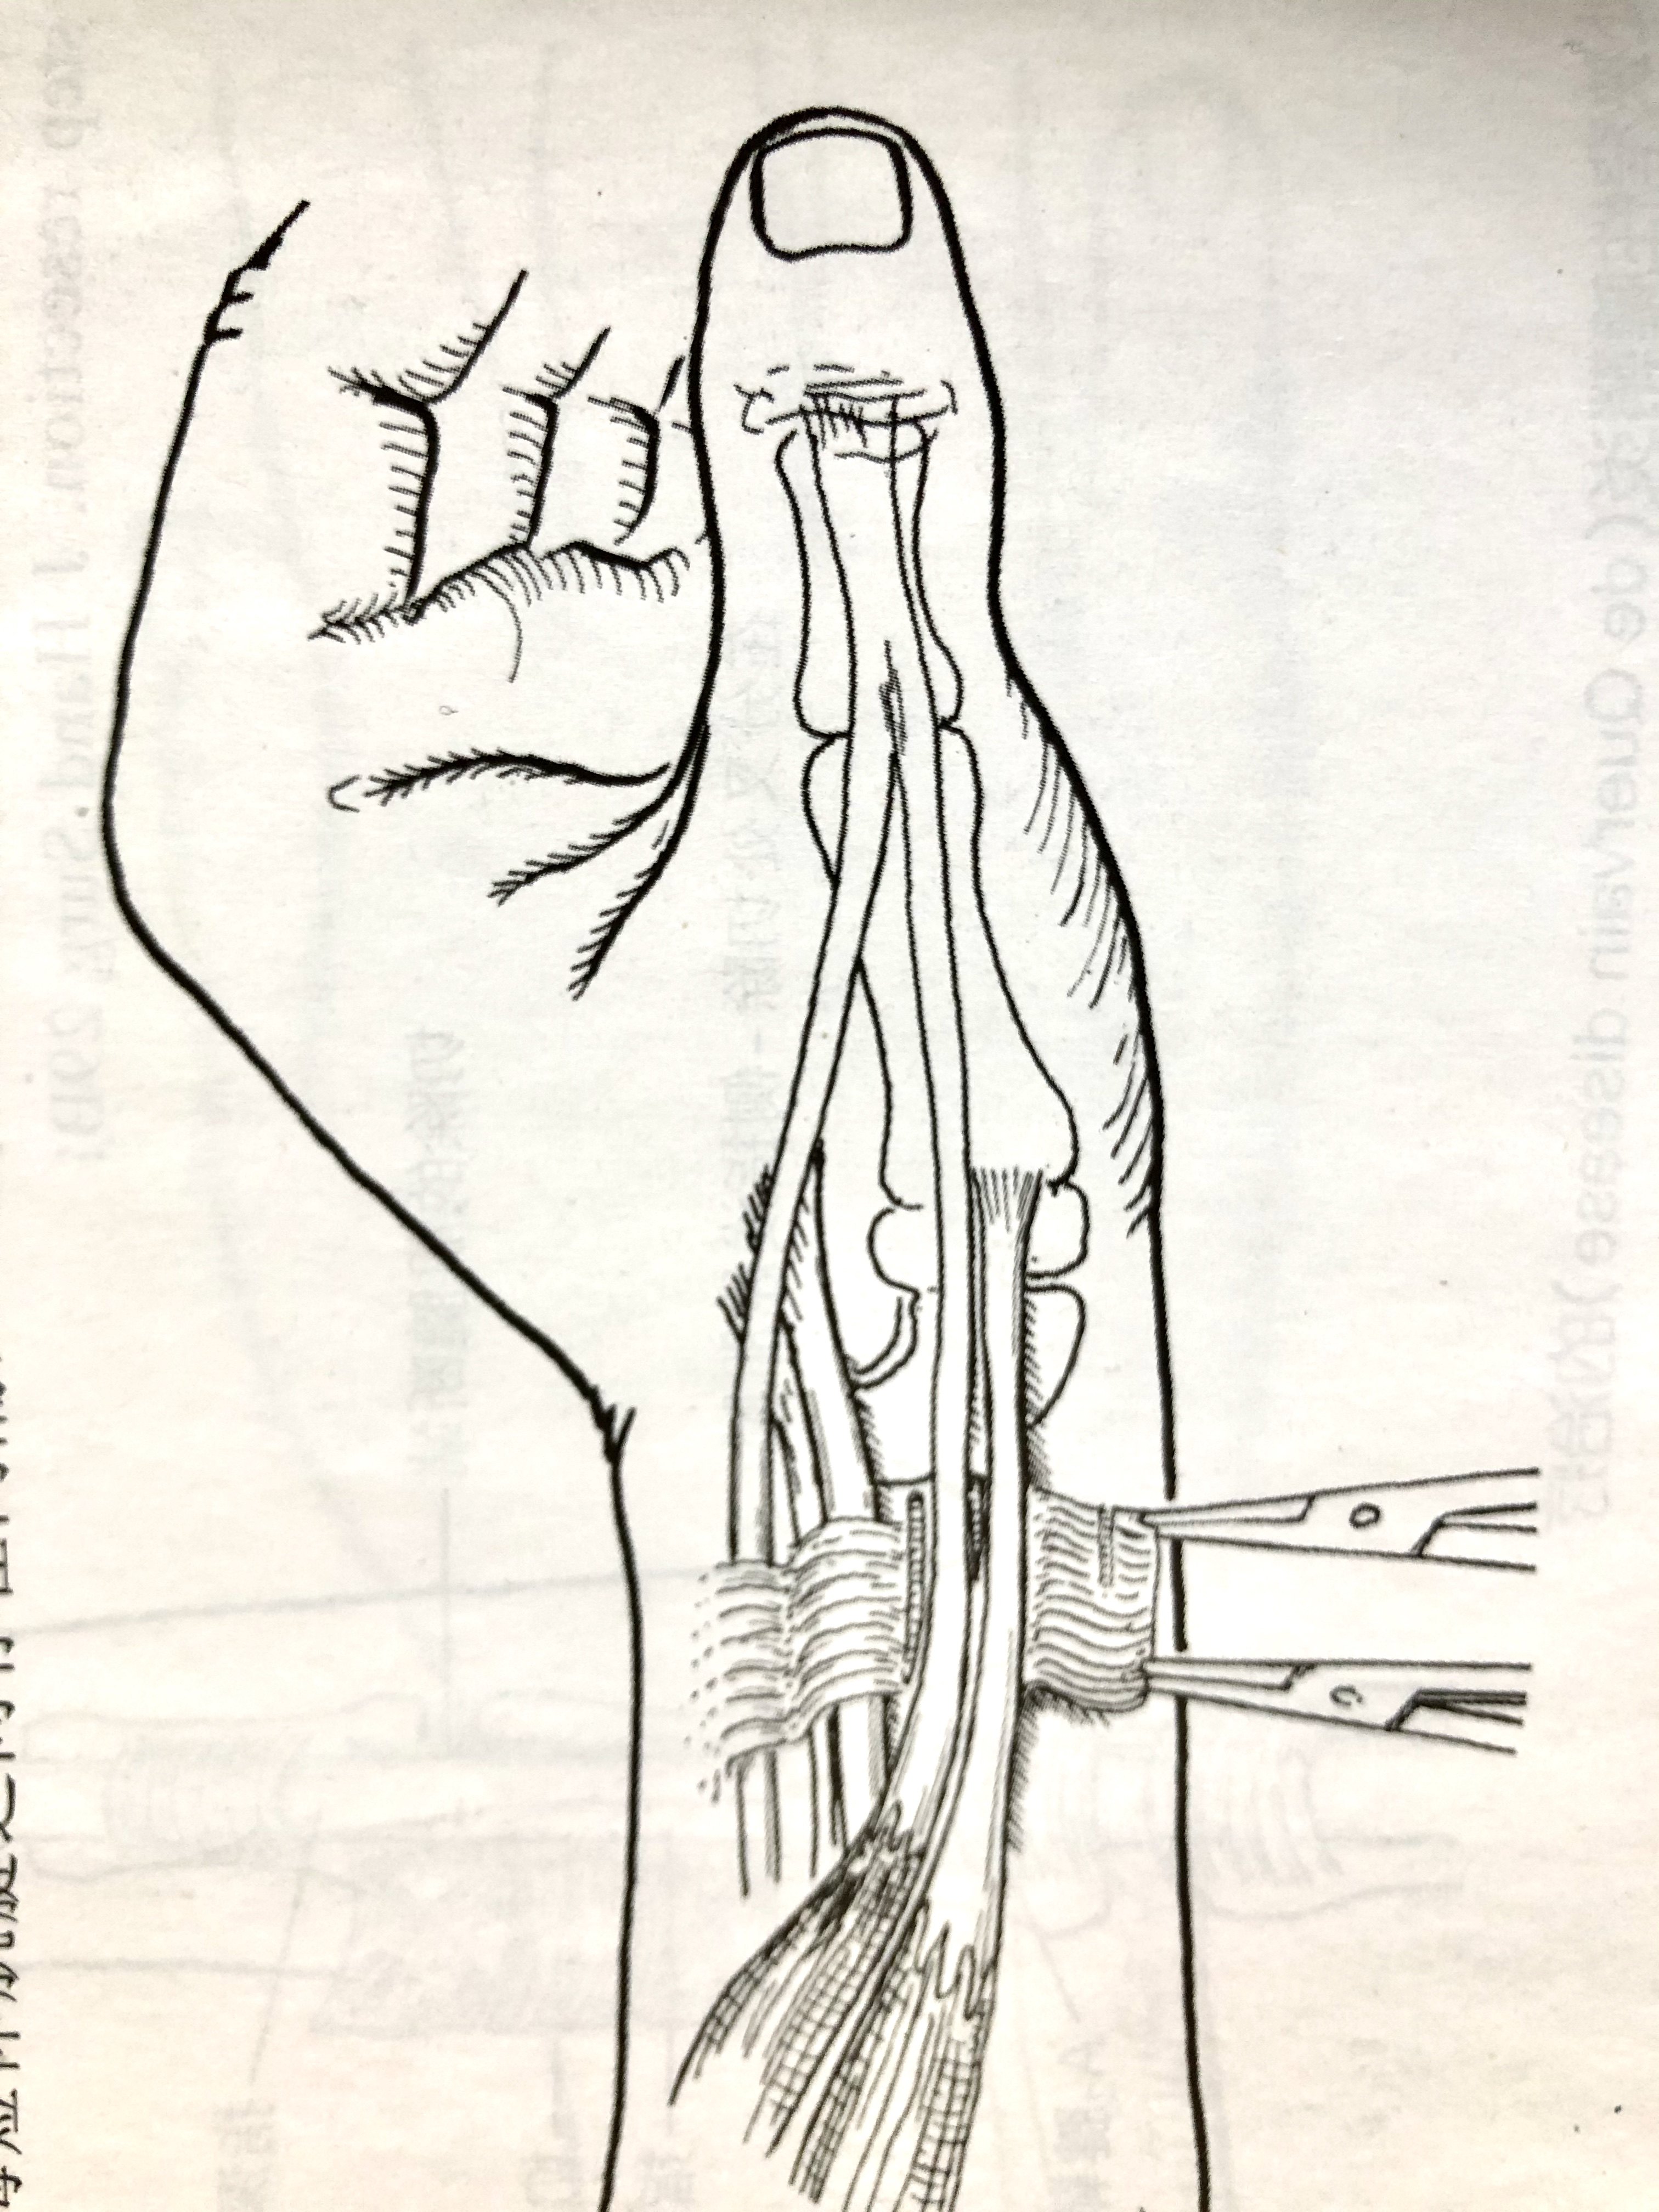 拇指腱鞘狭窄手术图解图片